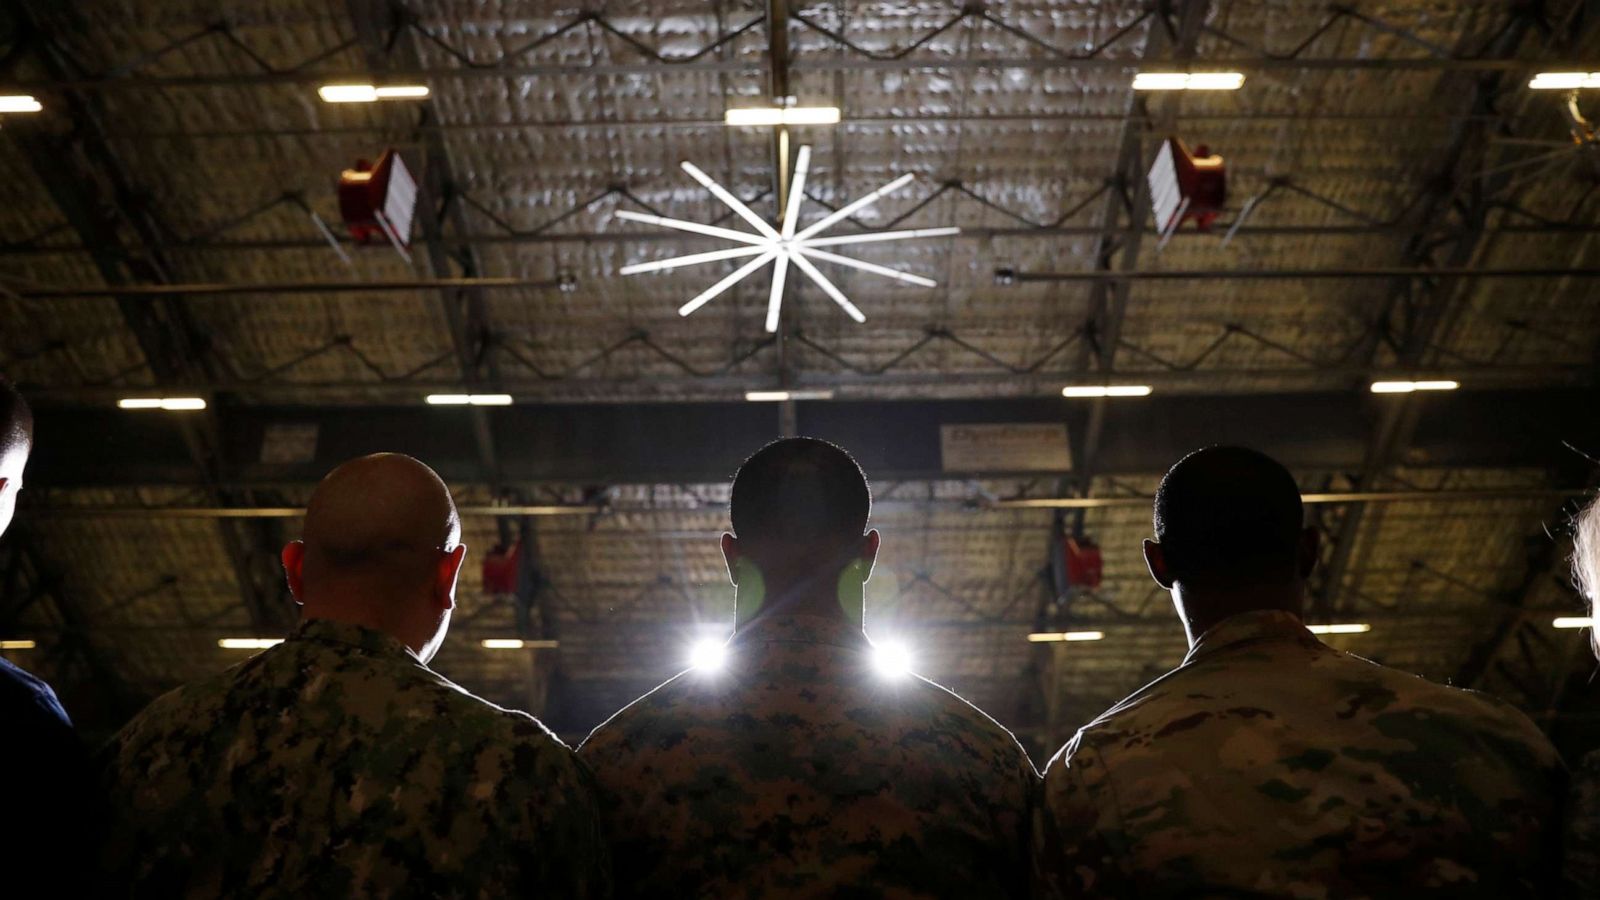 میزان خودکشی در ارتش آمریکا چهار برابر میزان تلفات در جنگ بوده است